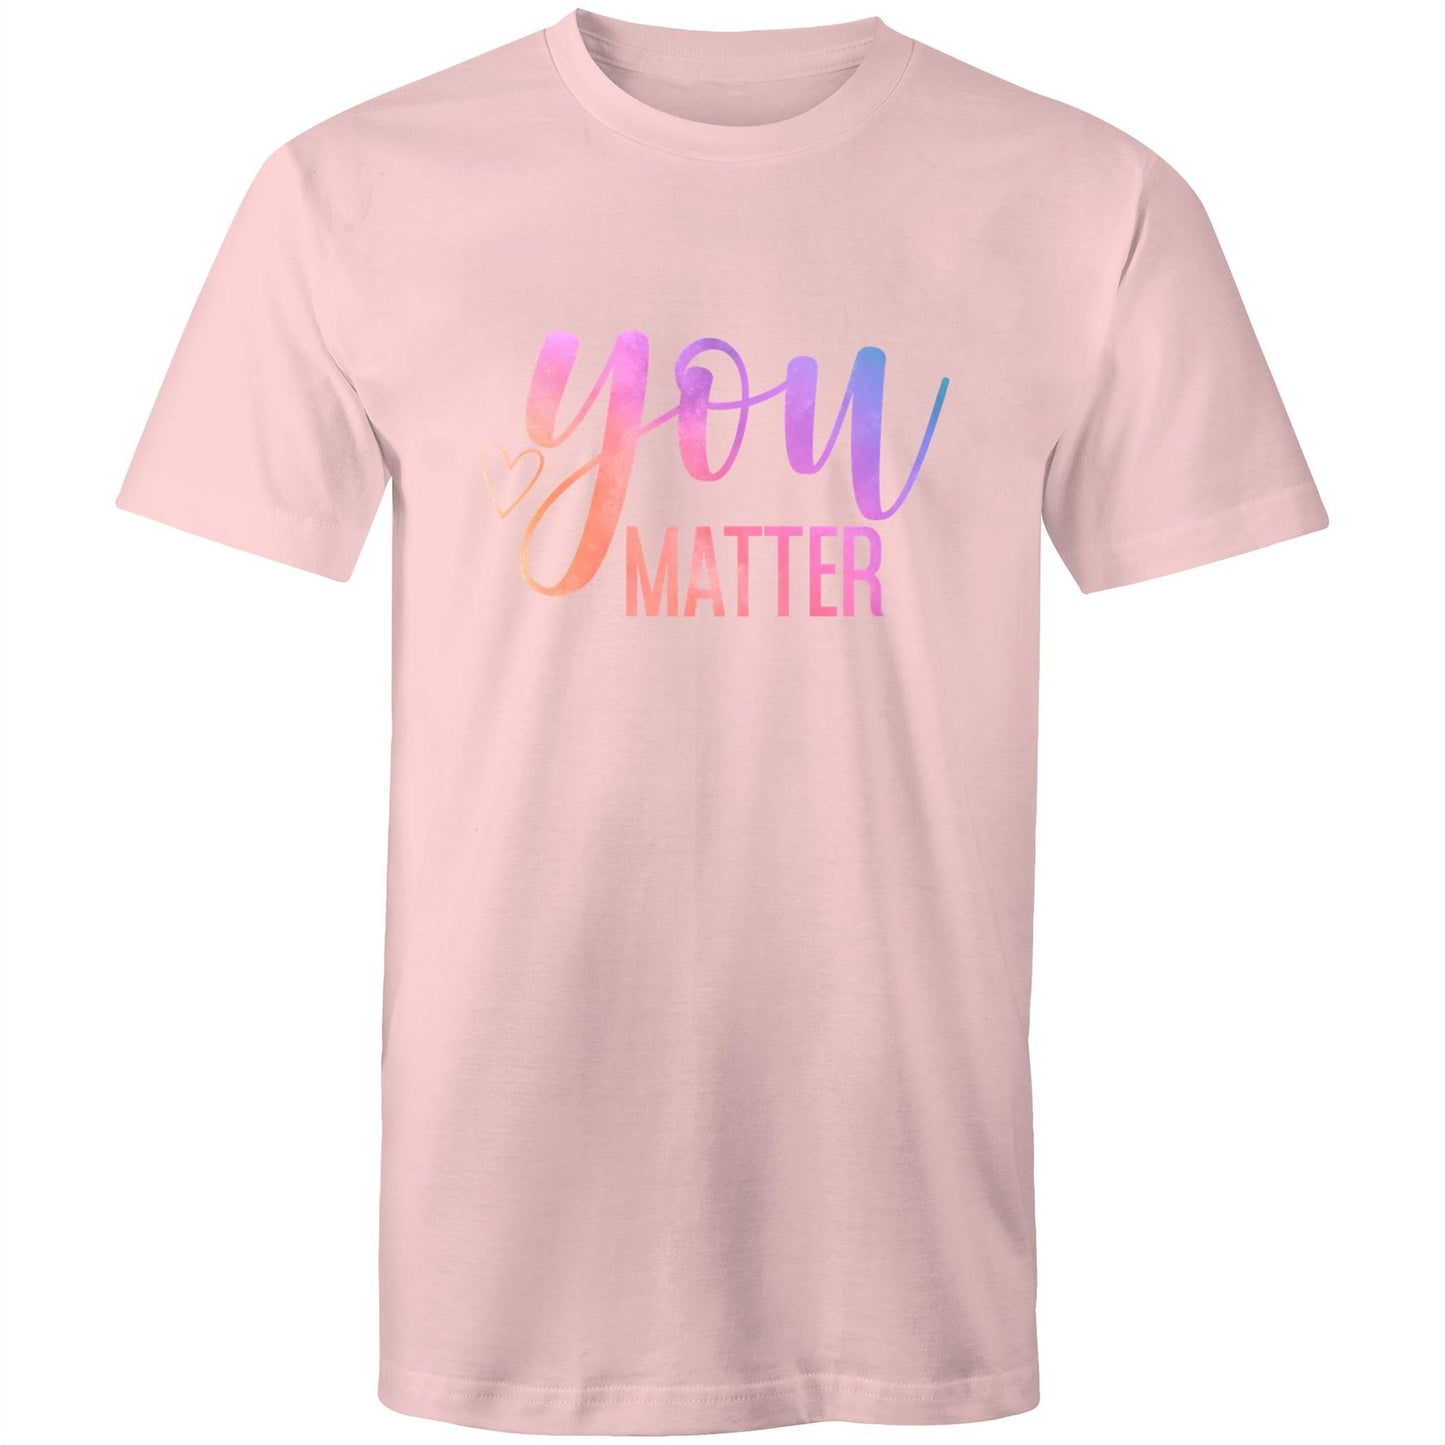 Mens T-Shirt - You Matter